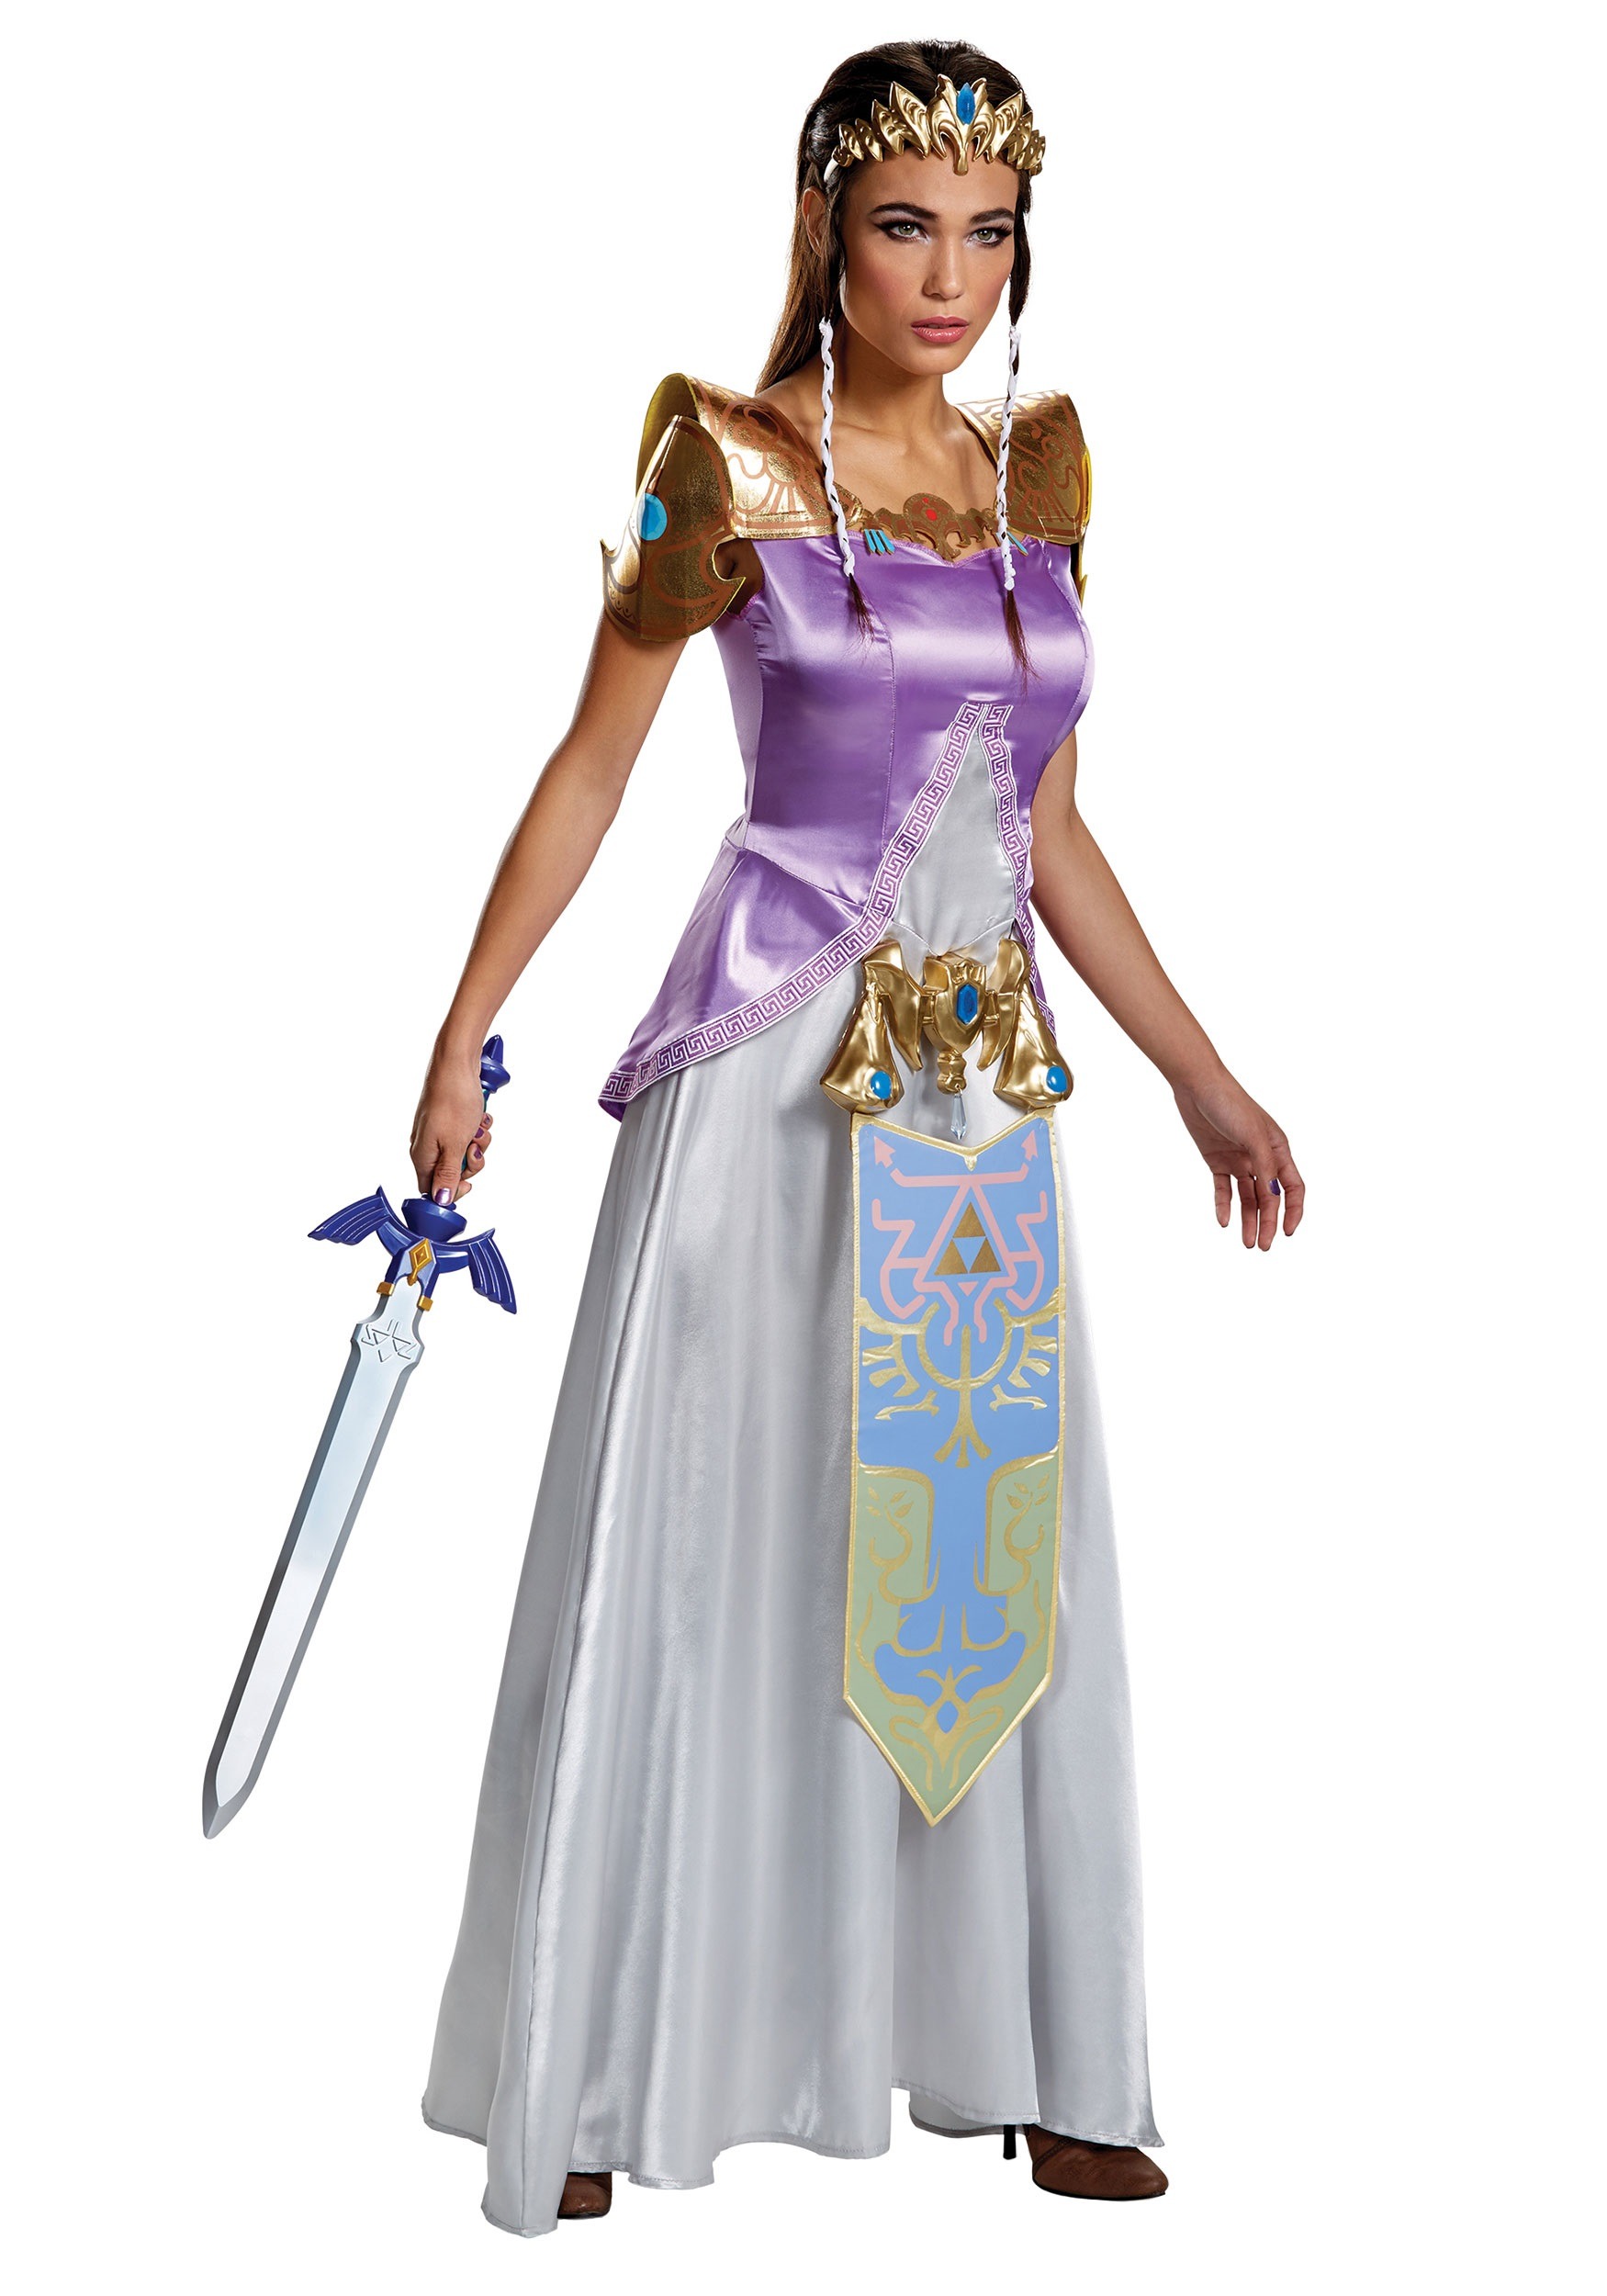 Image of Zelda Women's Deluxe Costume ID DI98796-L